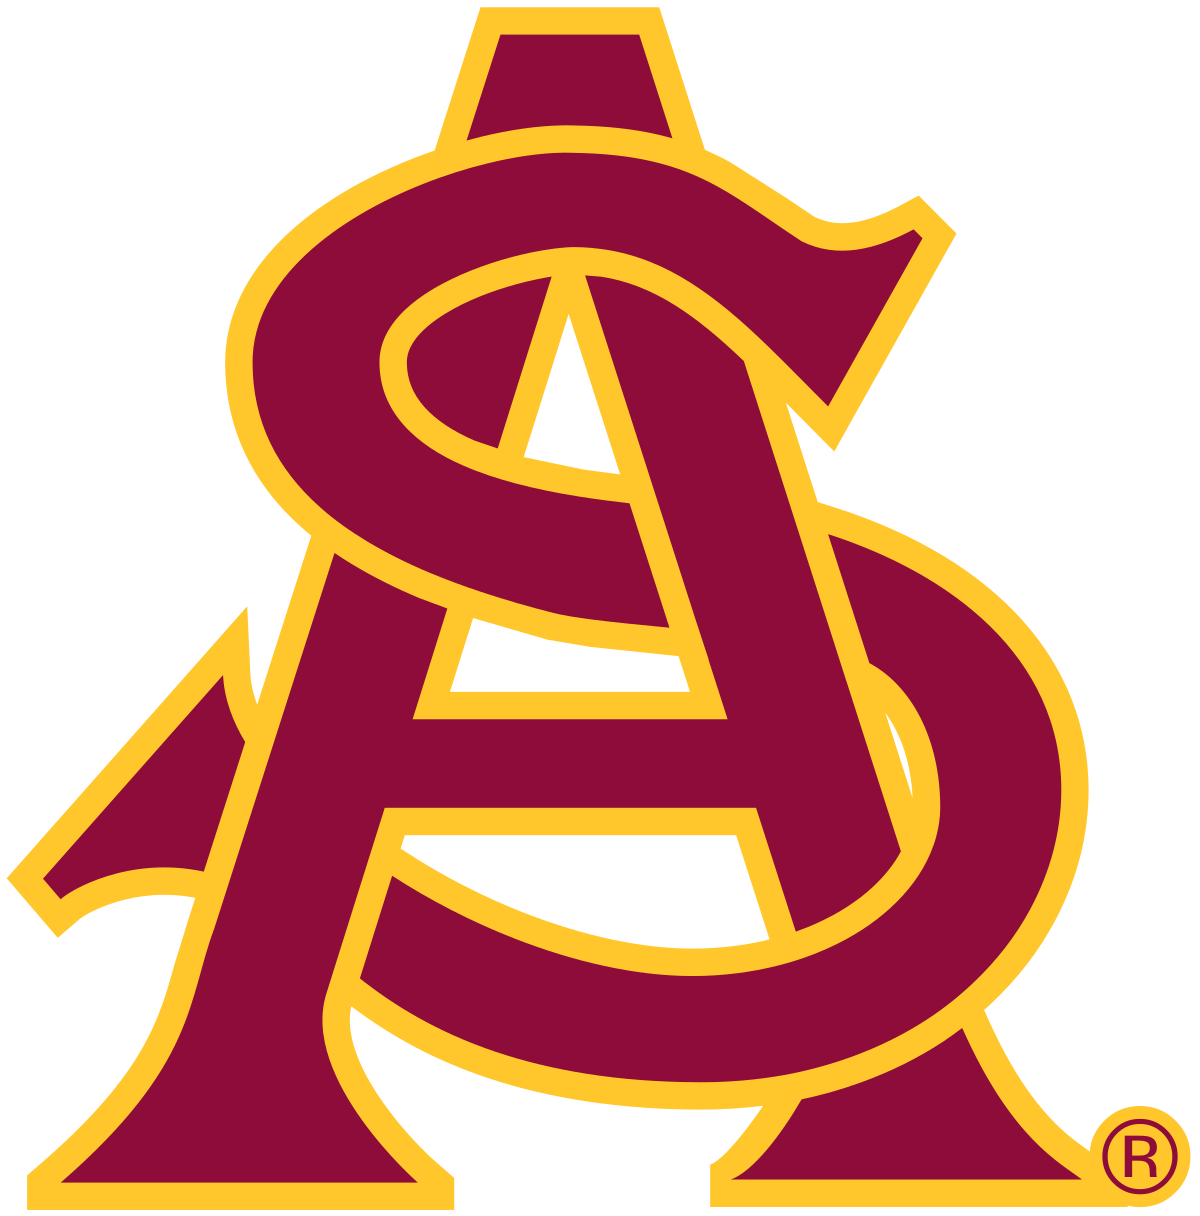 Arizona Football Team Logo - 2010 Arizona State Sun Devils football team